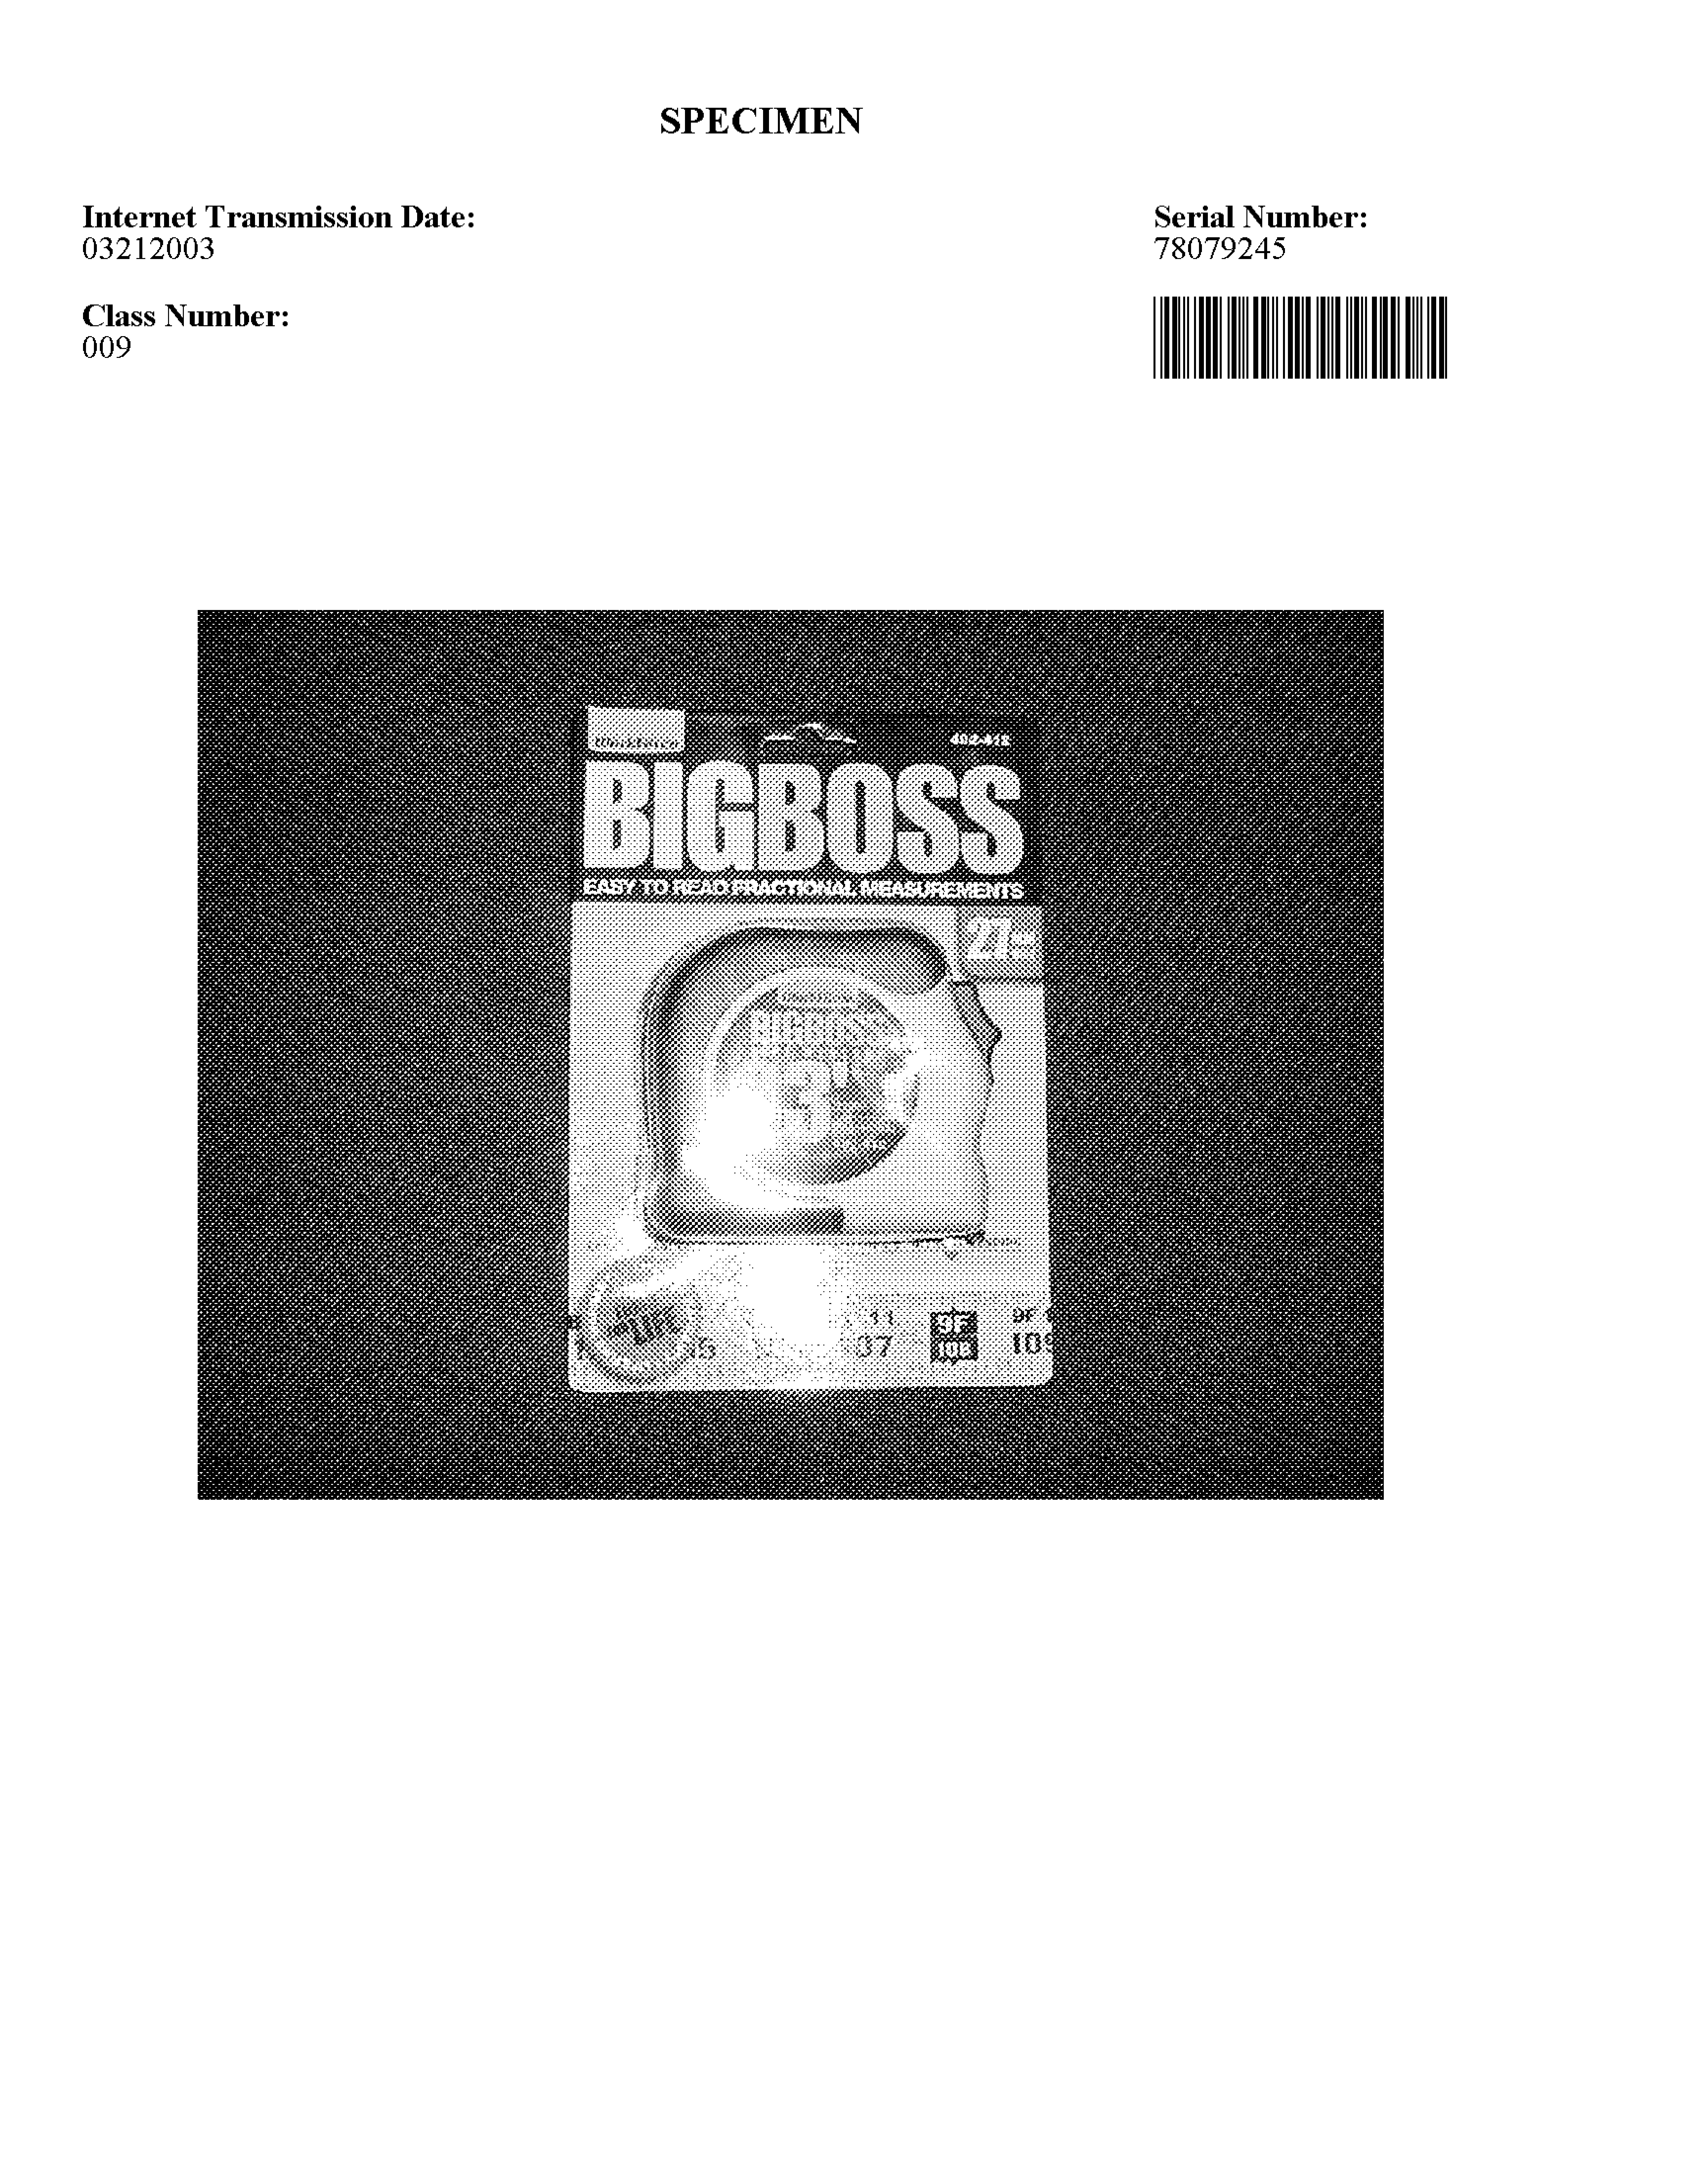 Trademark Logo BIG BOSS